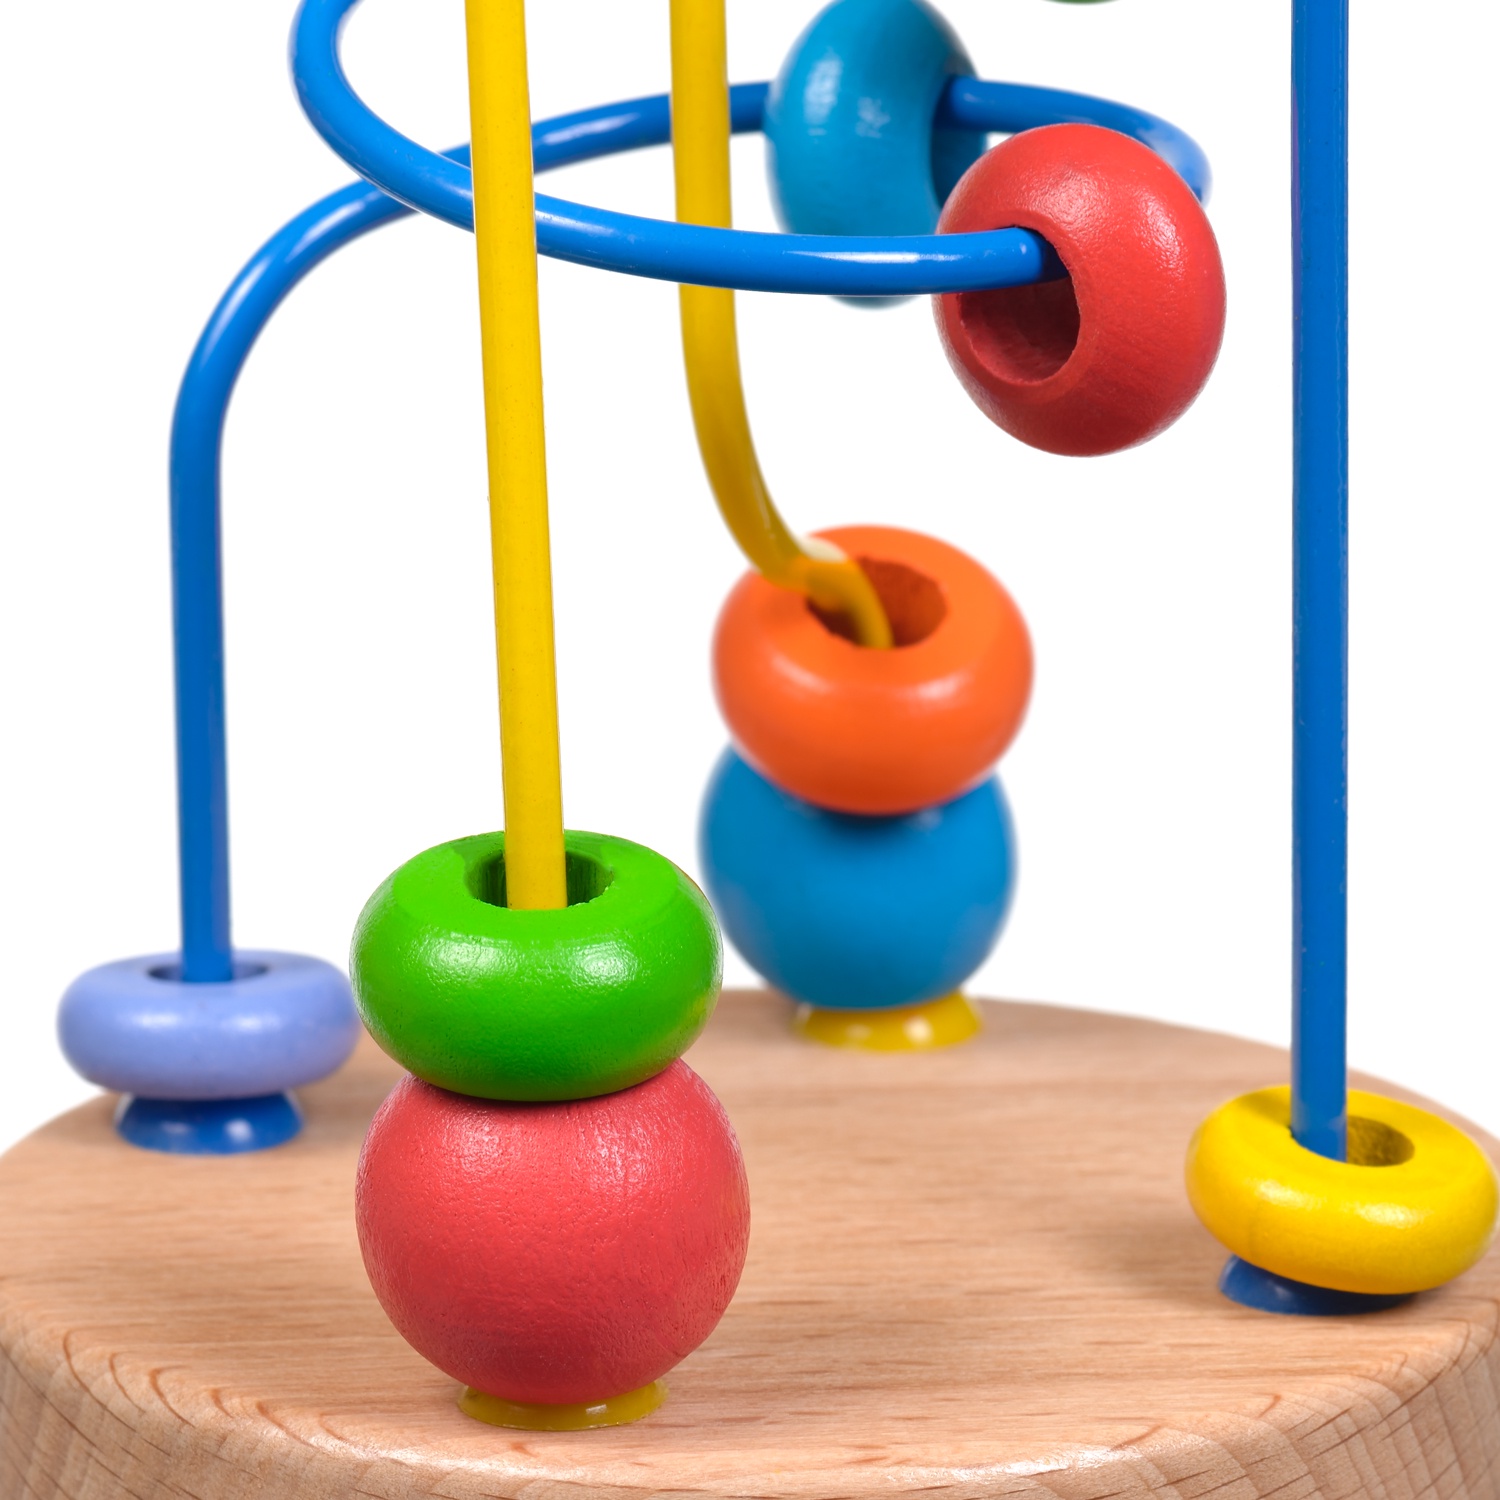 фото Игрушка развивающая МДИ "Лабиринт № 5" Д193, разноцветный